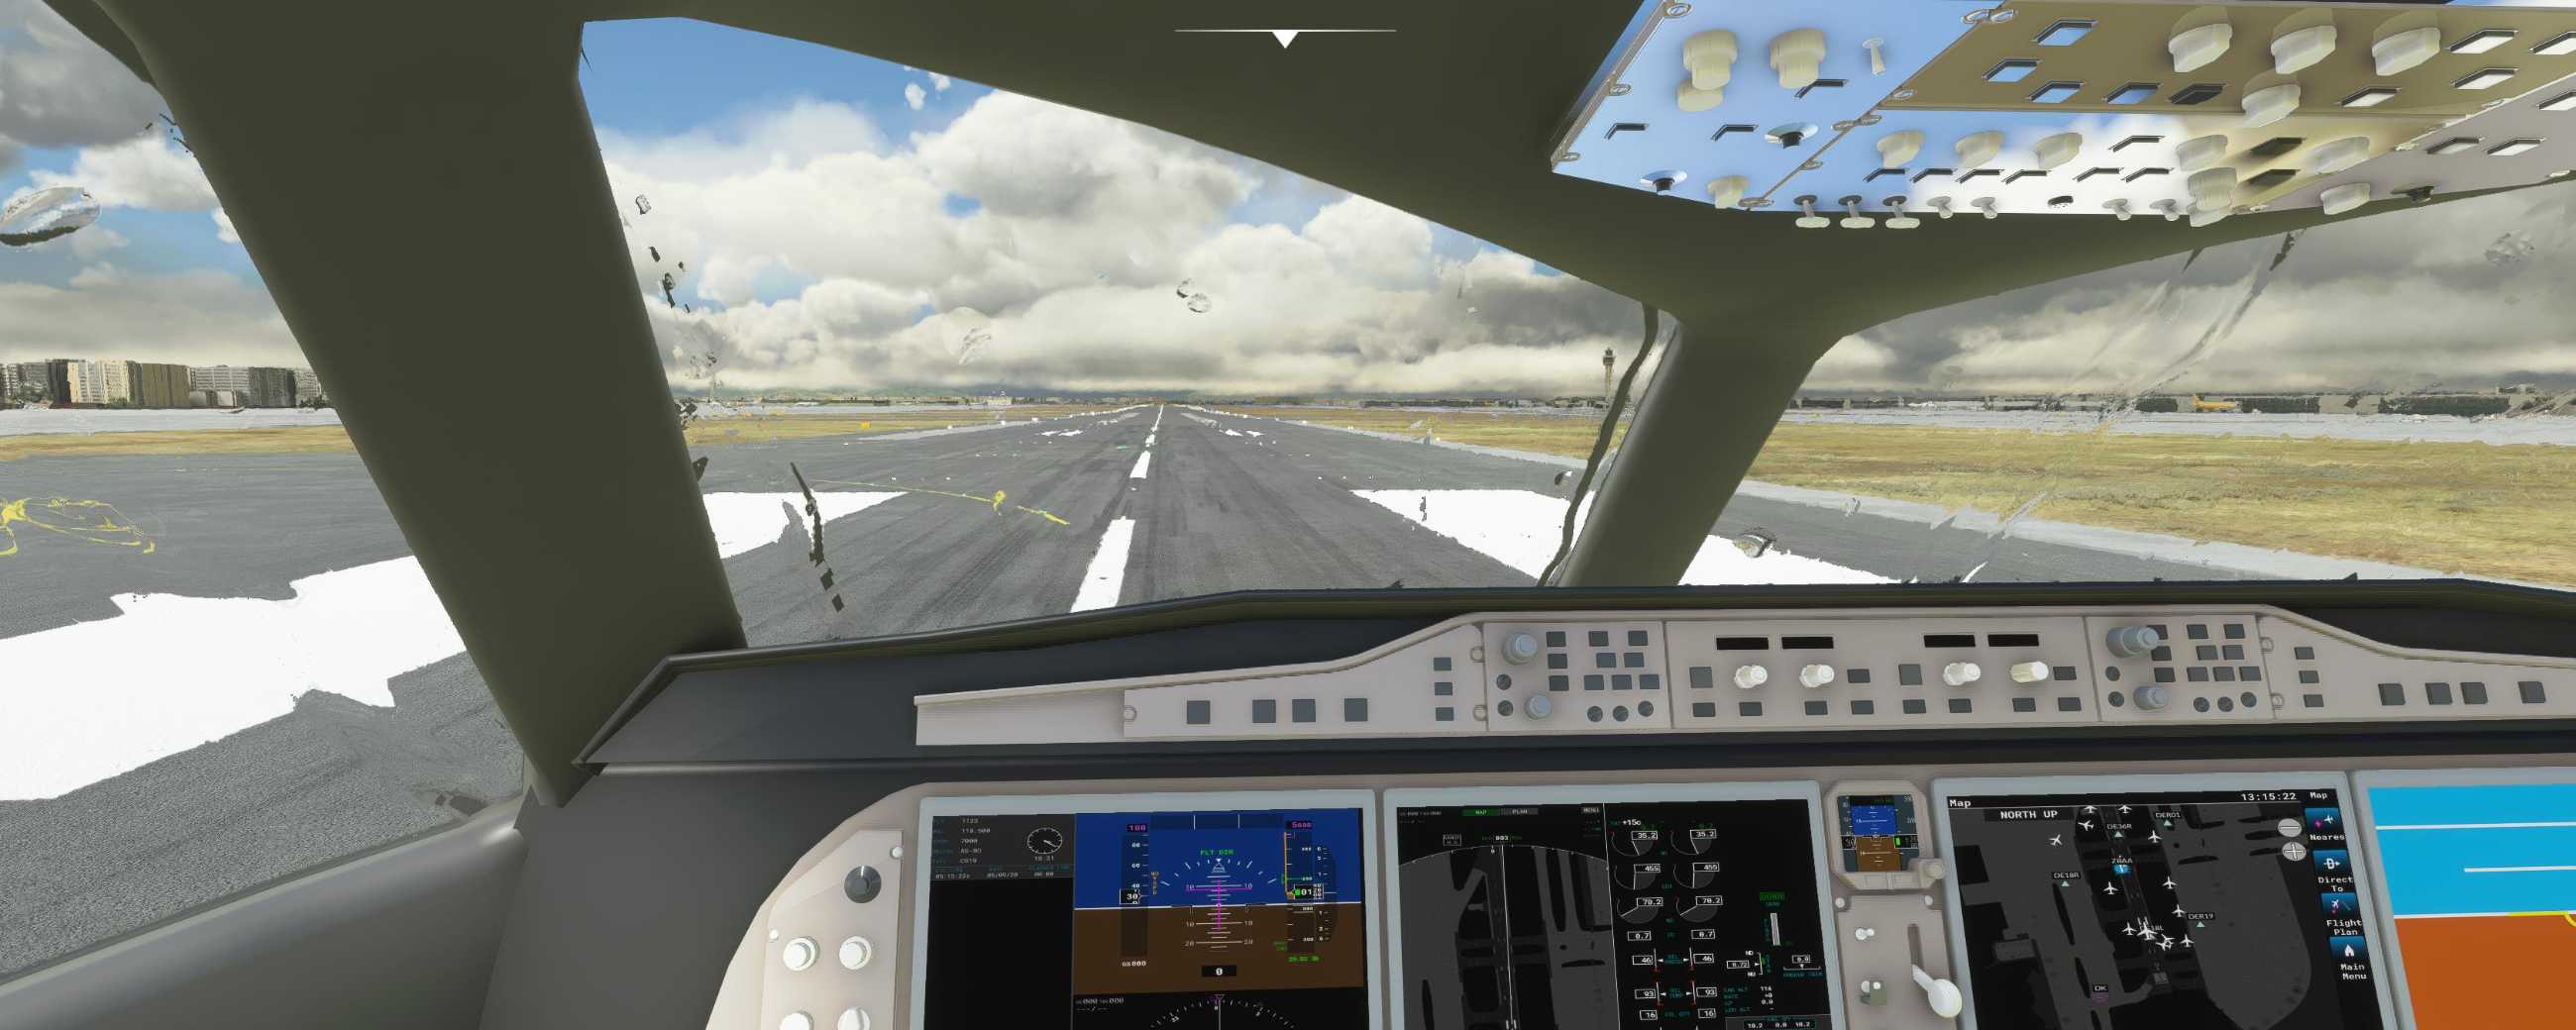 FYCYC-C919 国产大飞机机模 微软模拟飞行演示-8629 